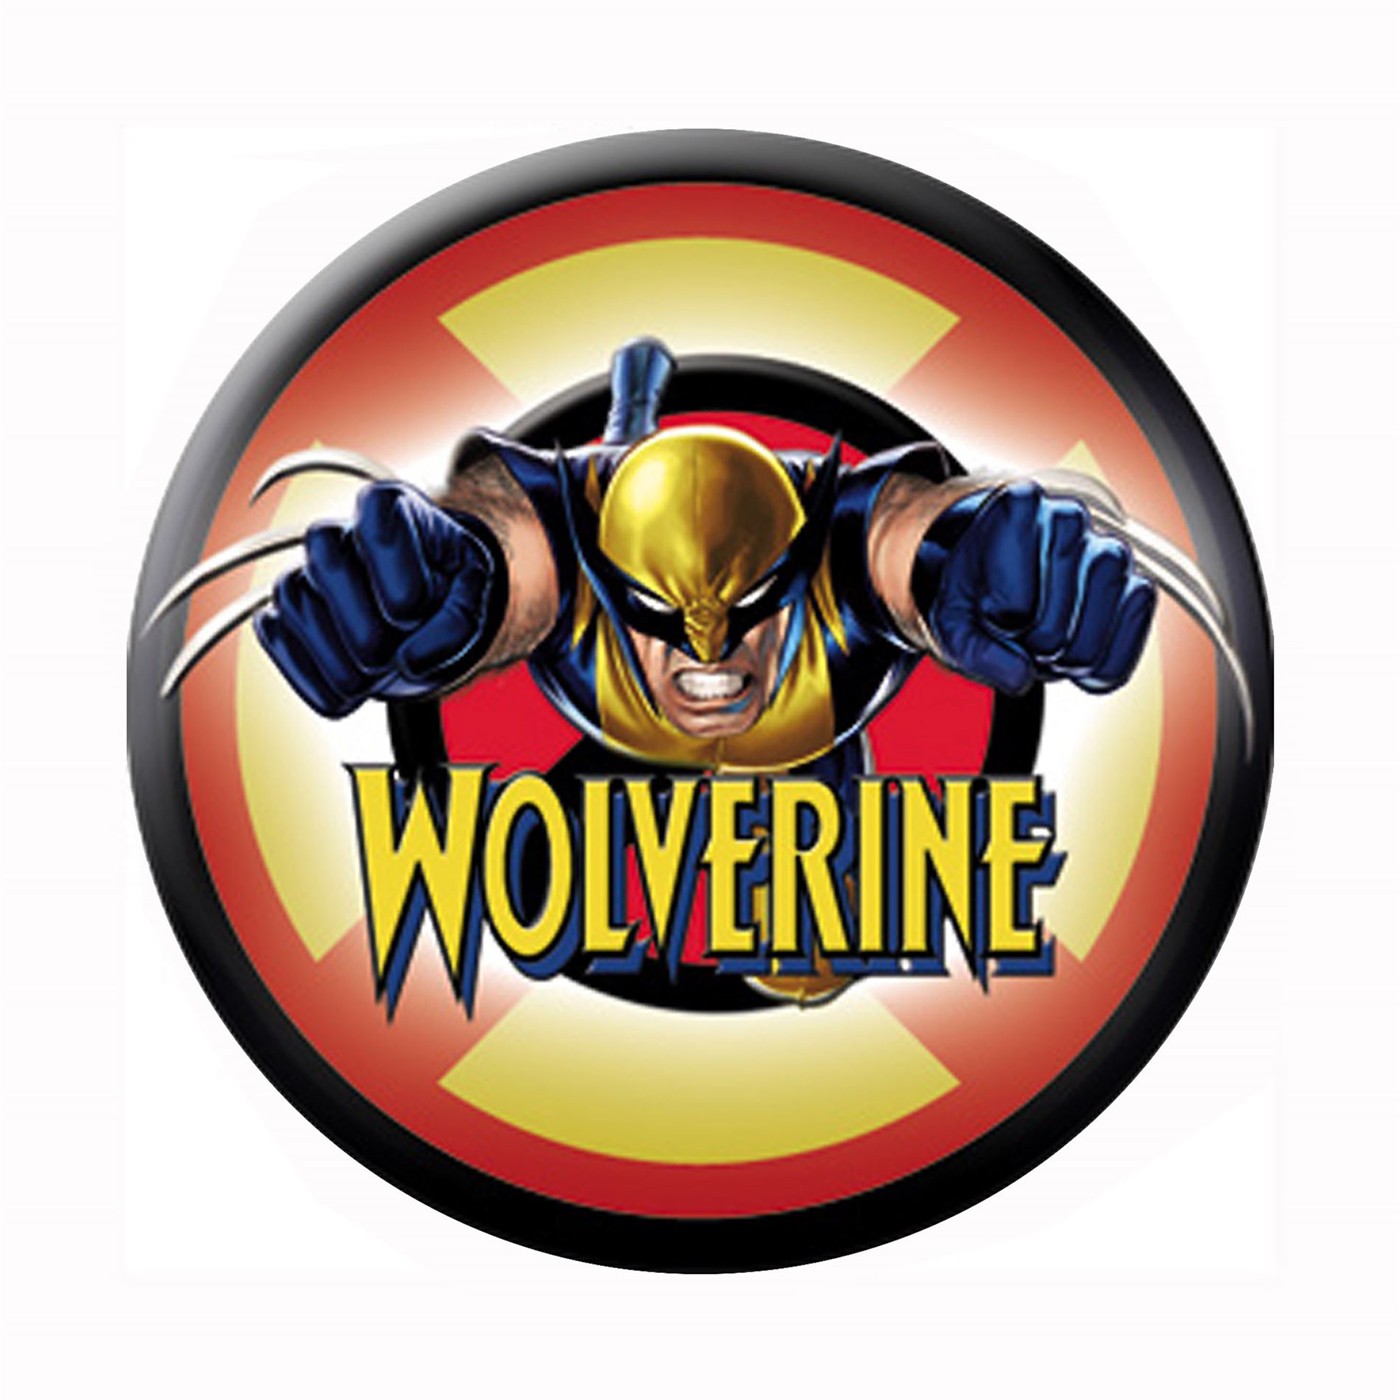 Wolverine X-Men Button